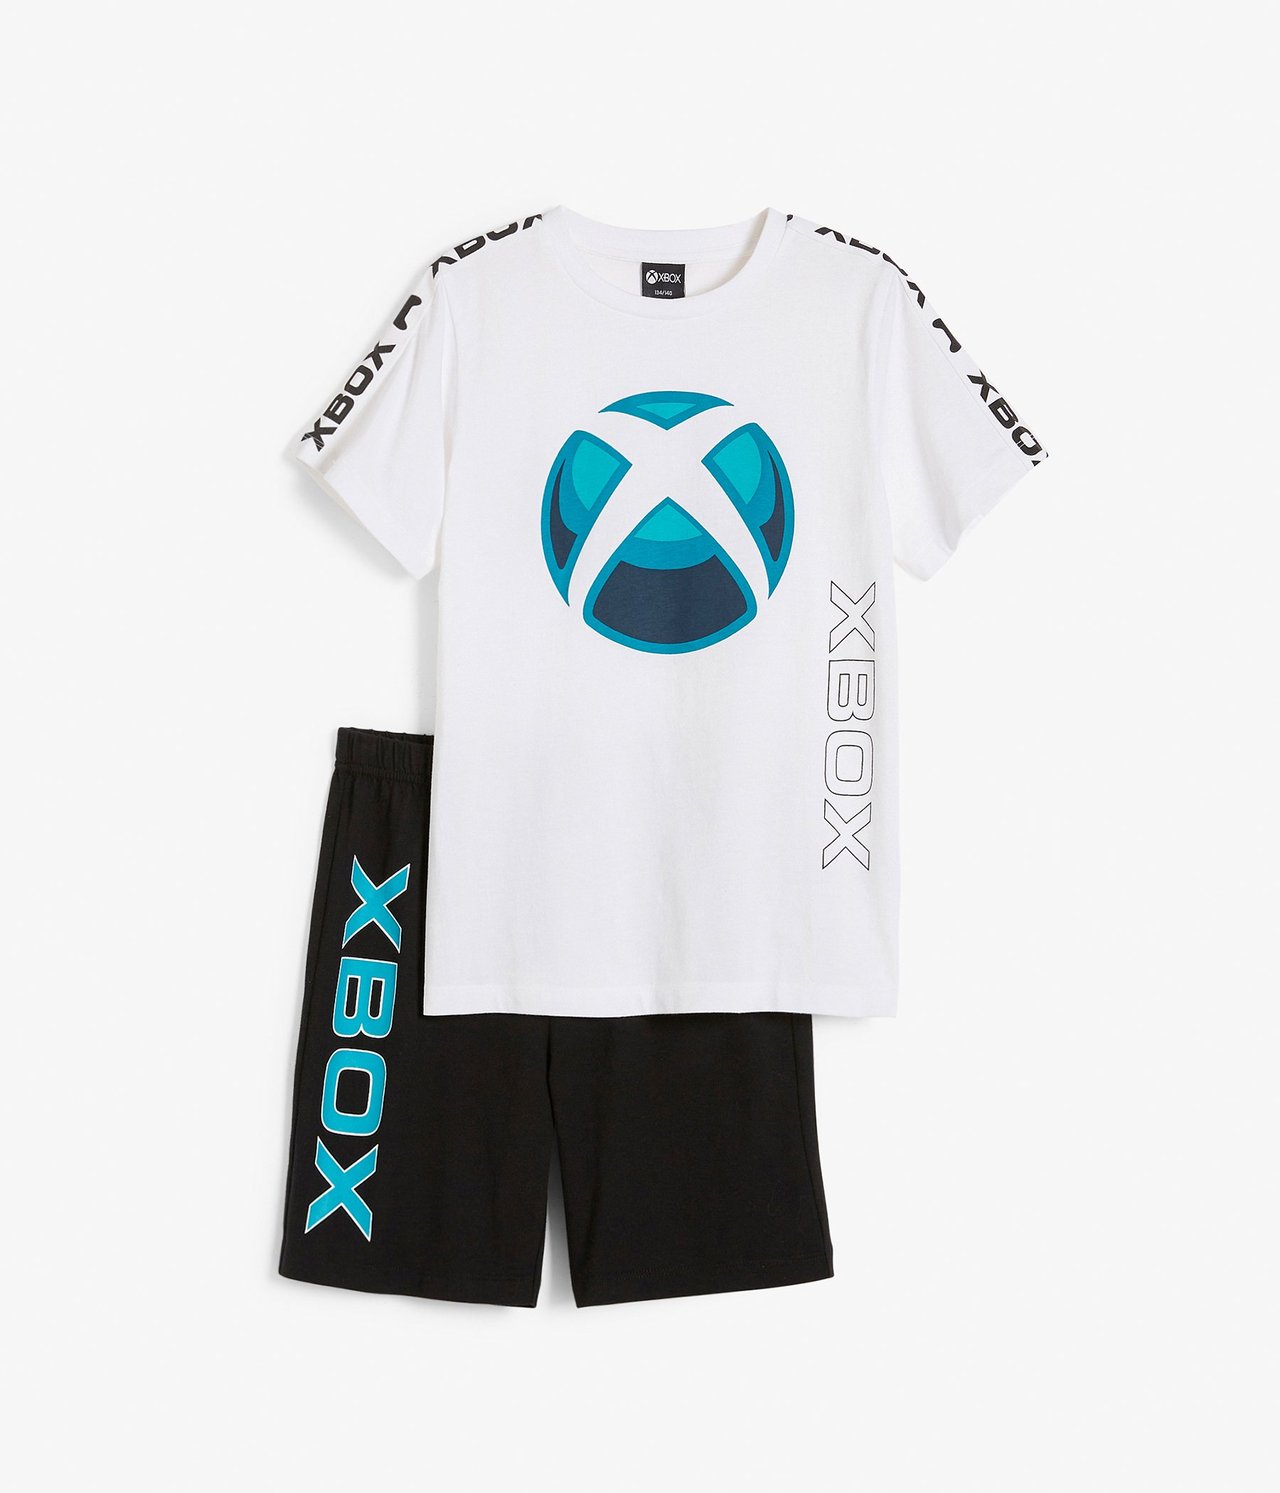 Xbox-pyjama